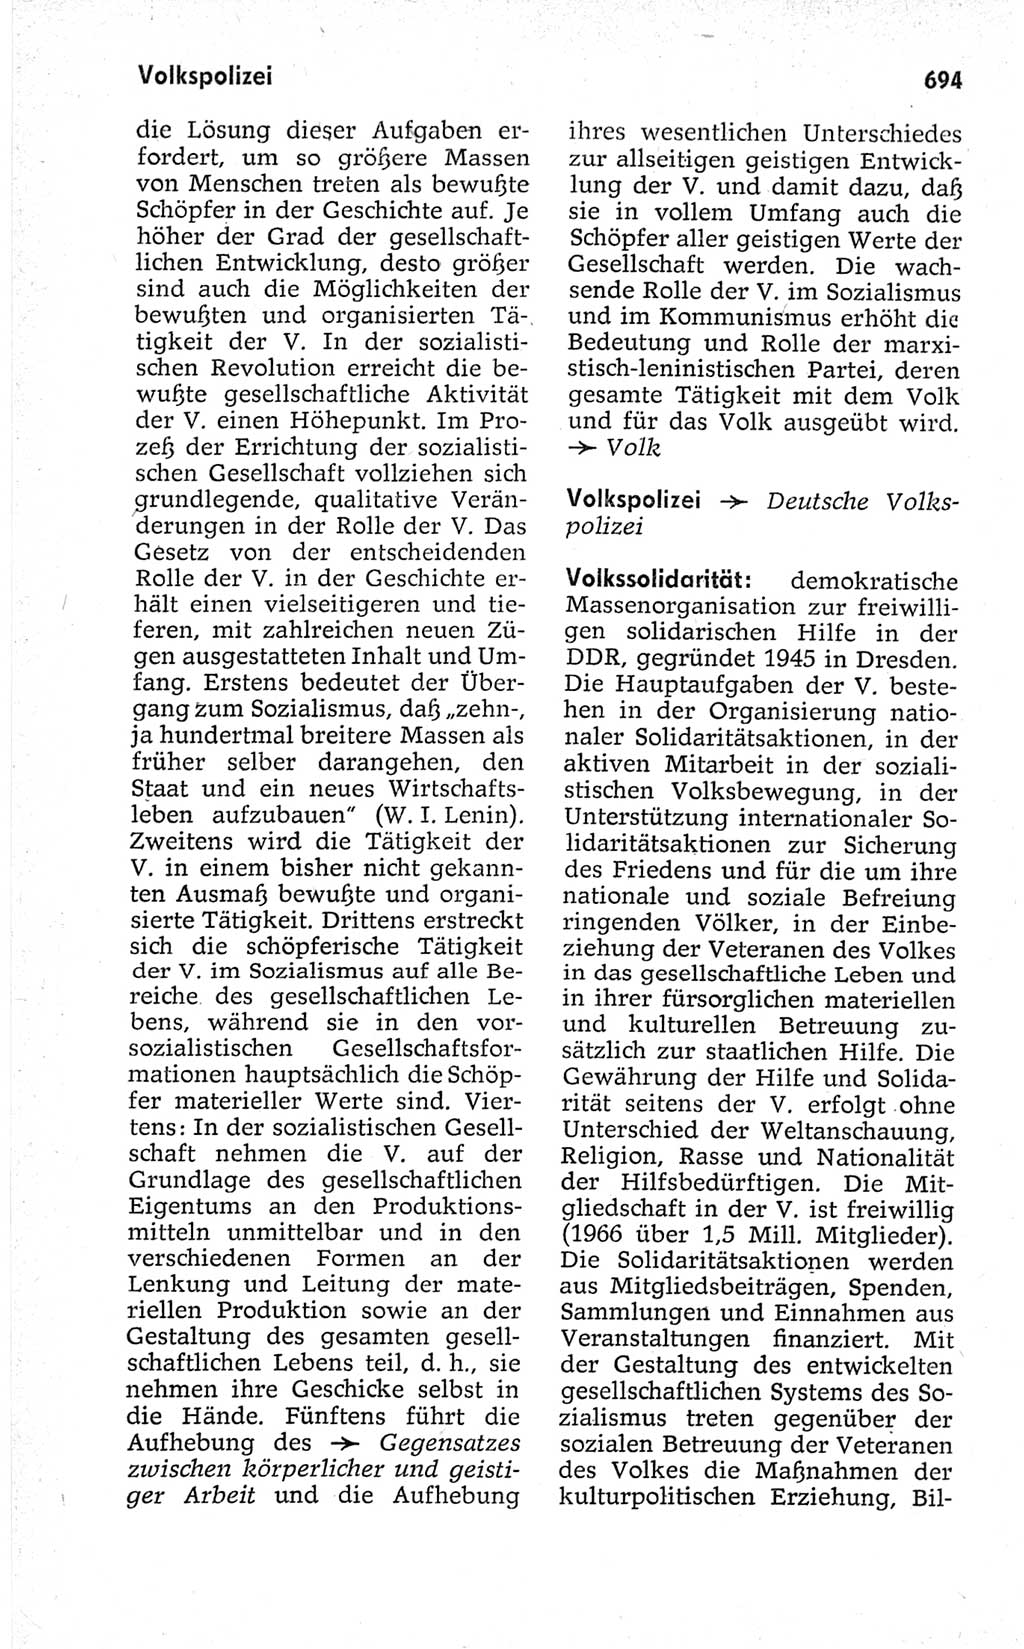 Kleines politisches Wörterbuch [Deutsche Demokratische Republik (DDR)] 1967, Seite 694 (Kl. pol. Wb. DDR 1967, S. 694)